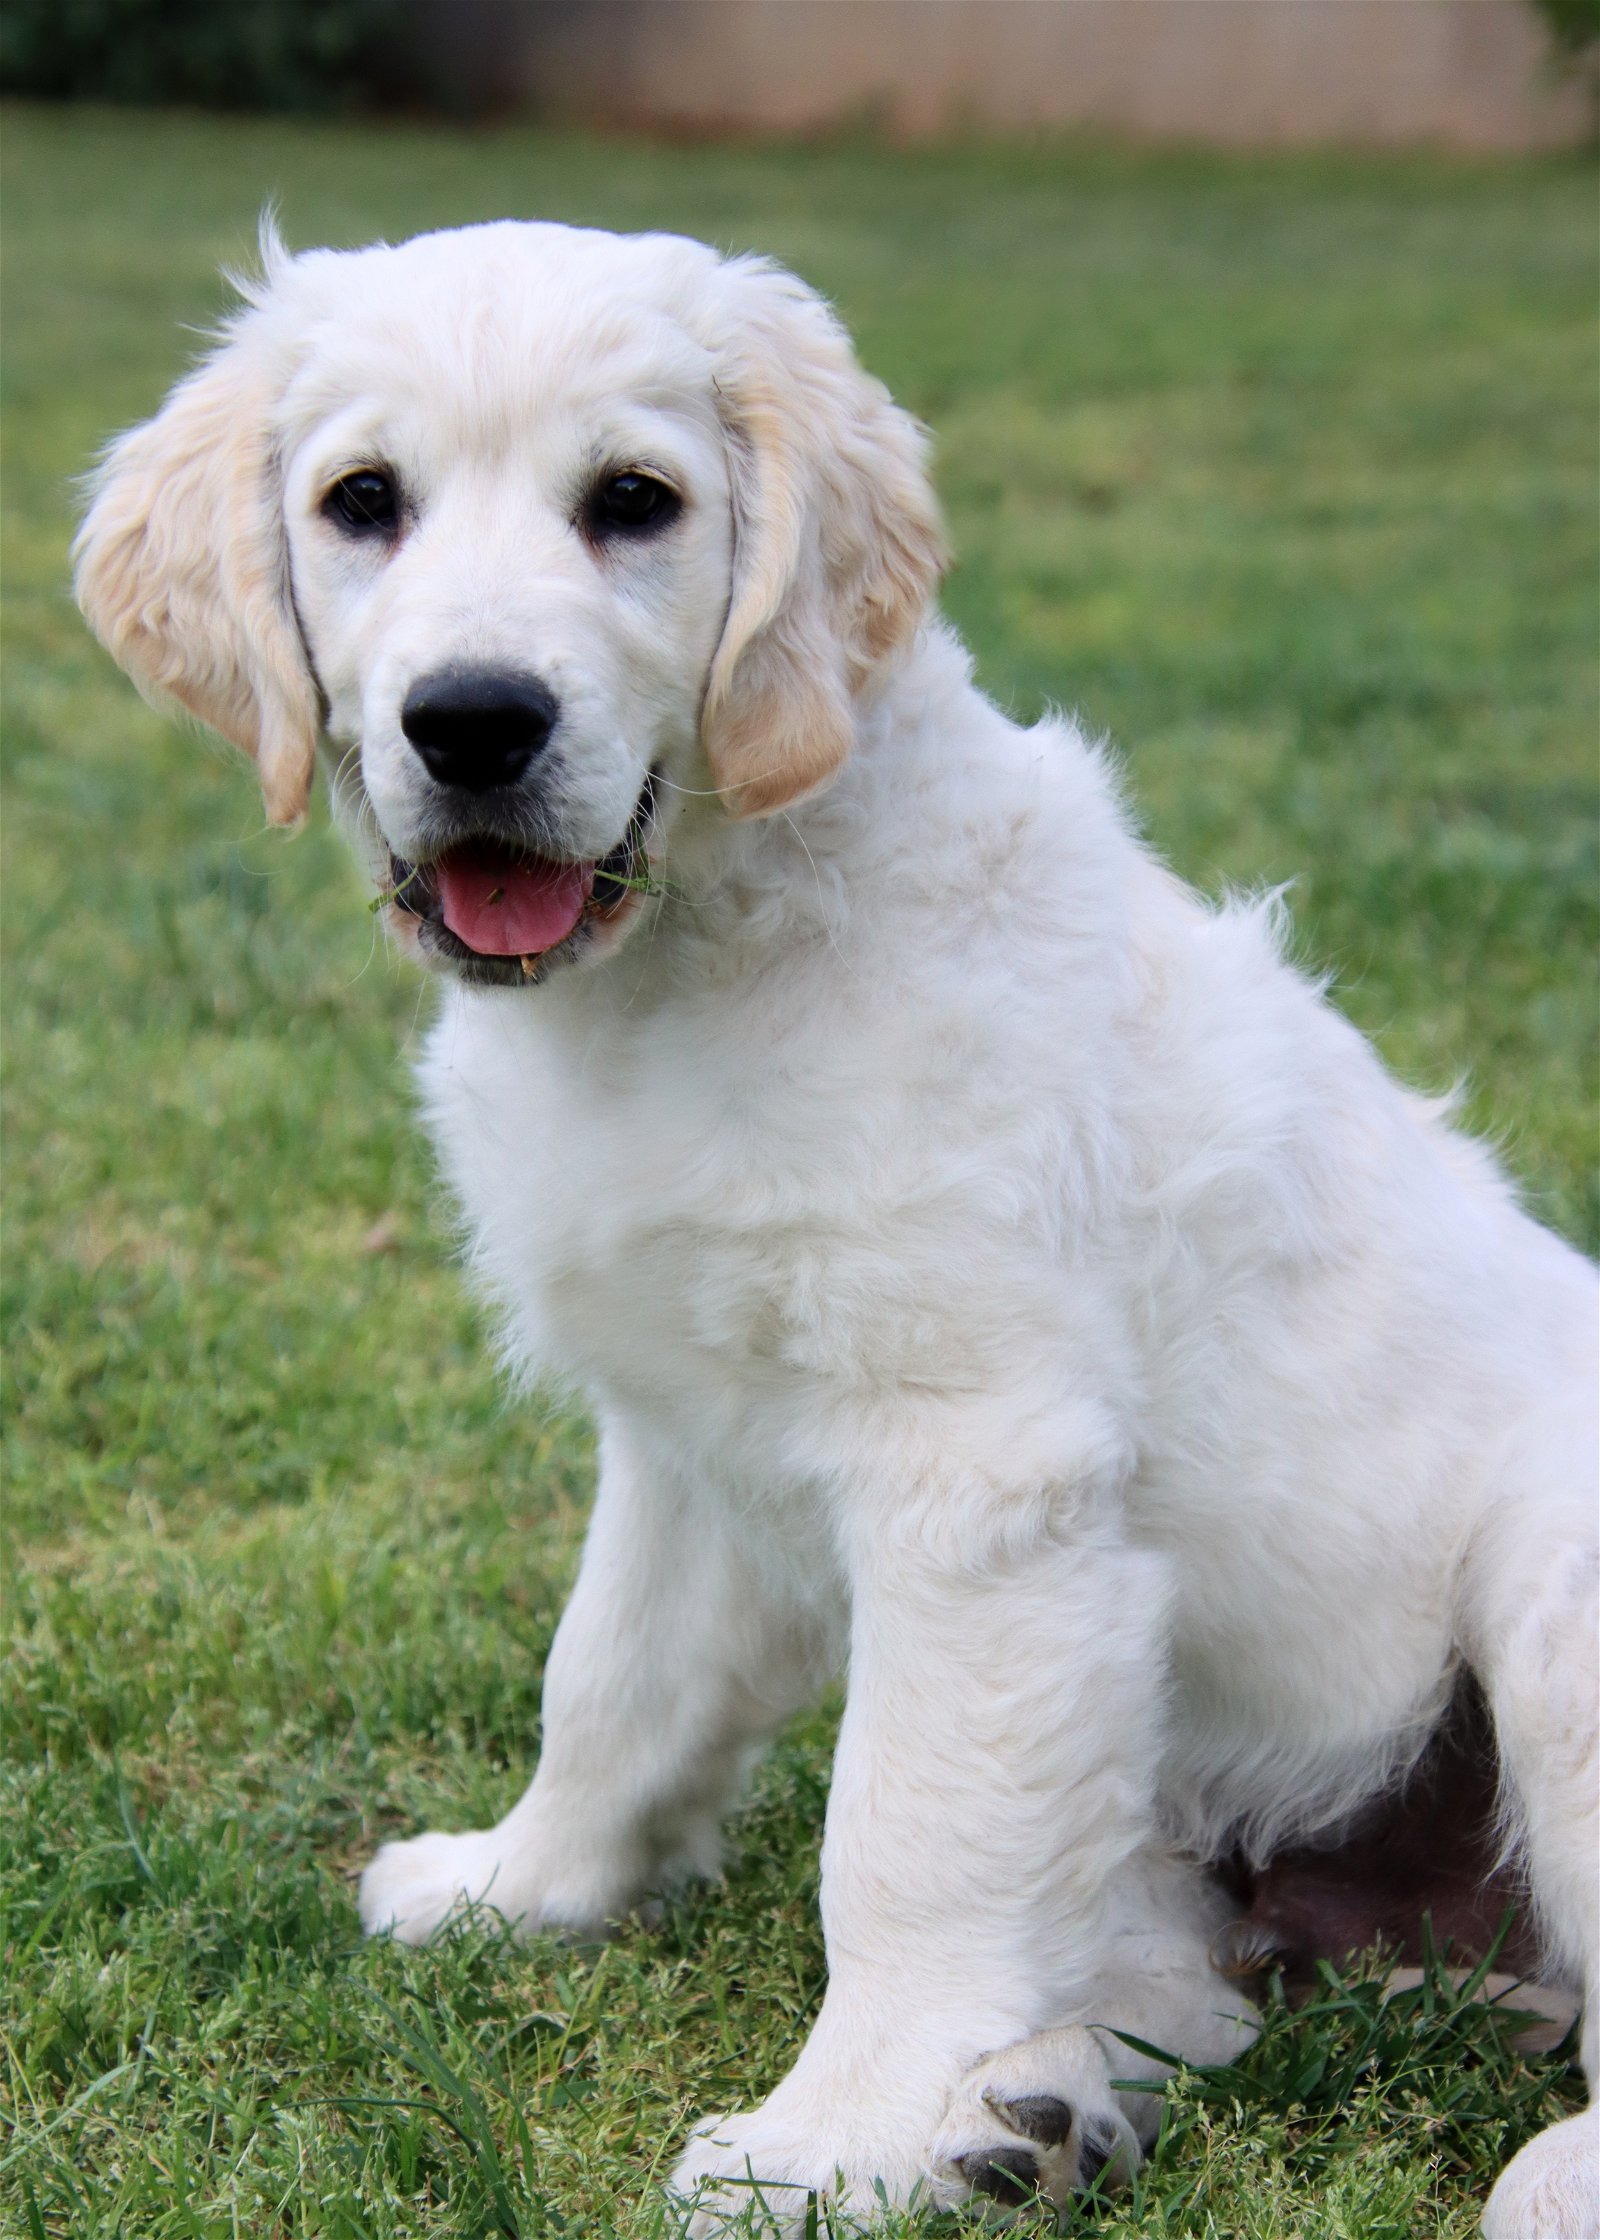 adoptable Dog in Glendale, AZ named Pippen/Charlie (ADOPTION PENDING)